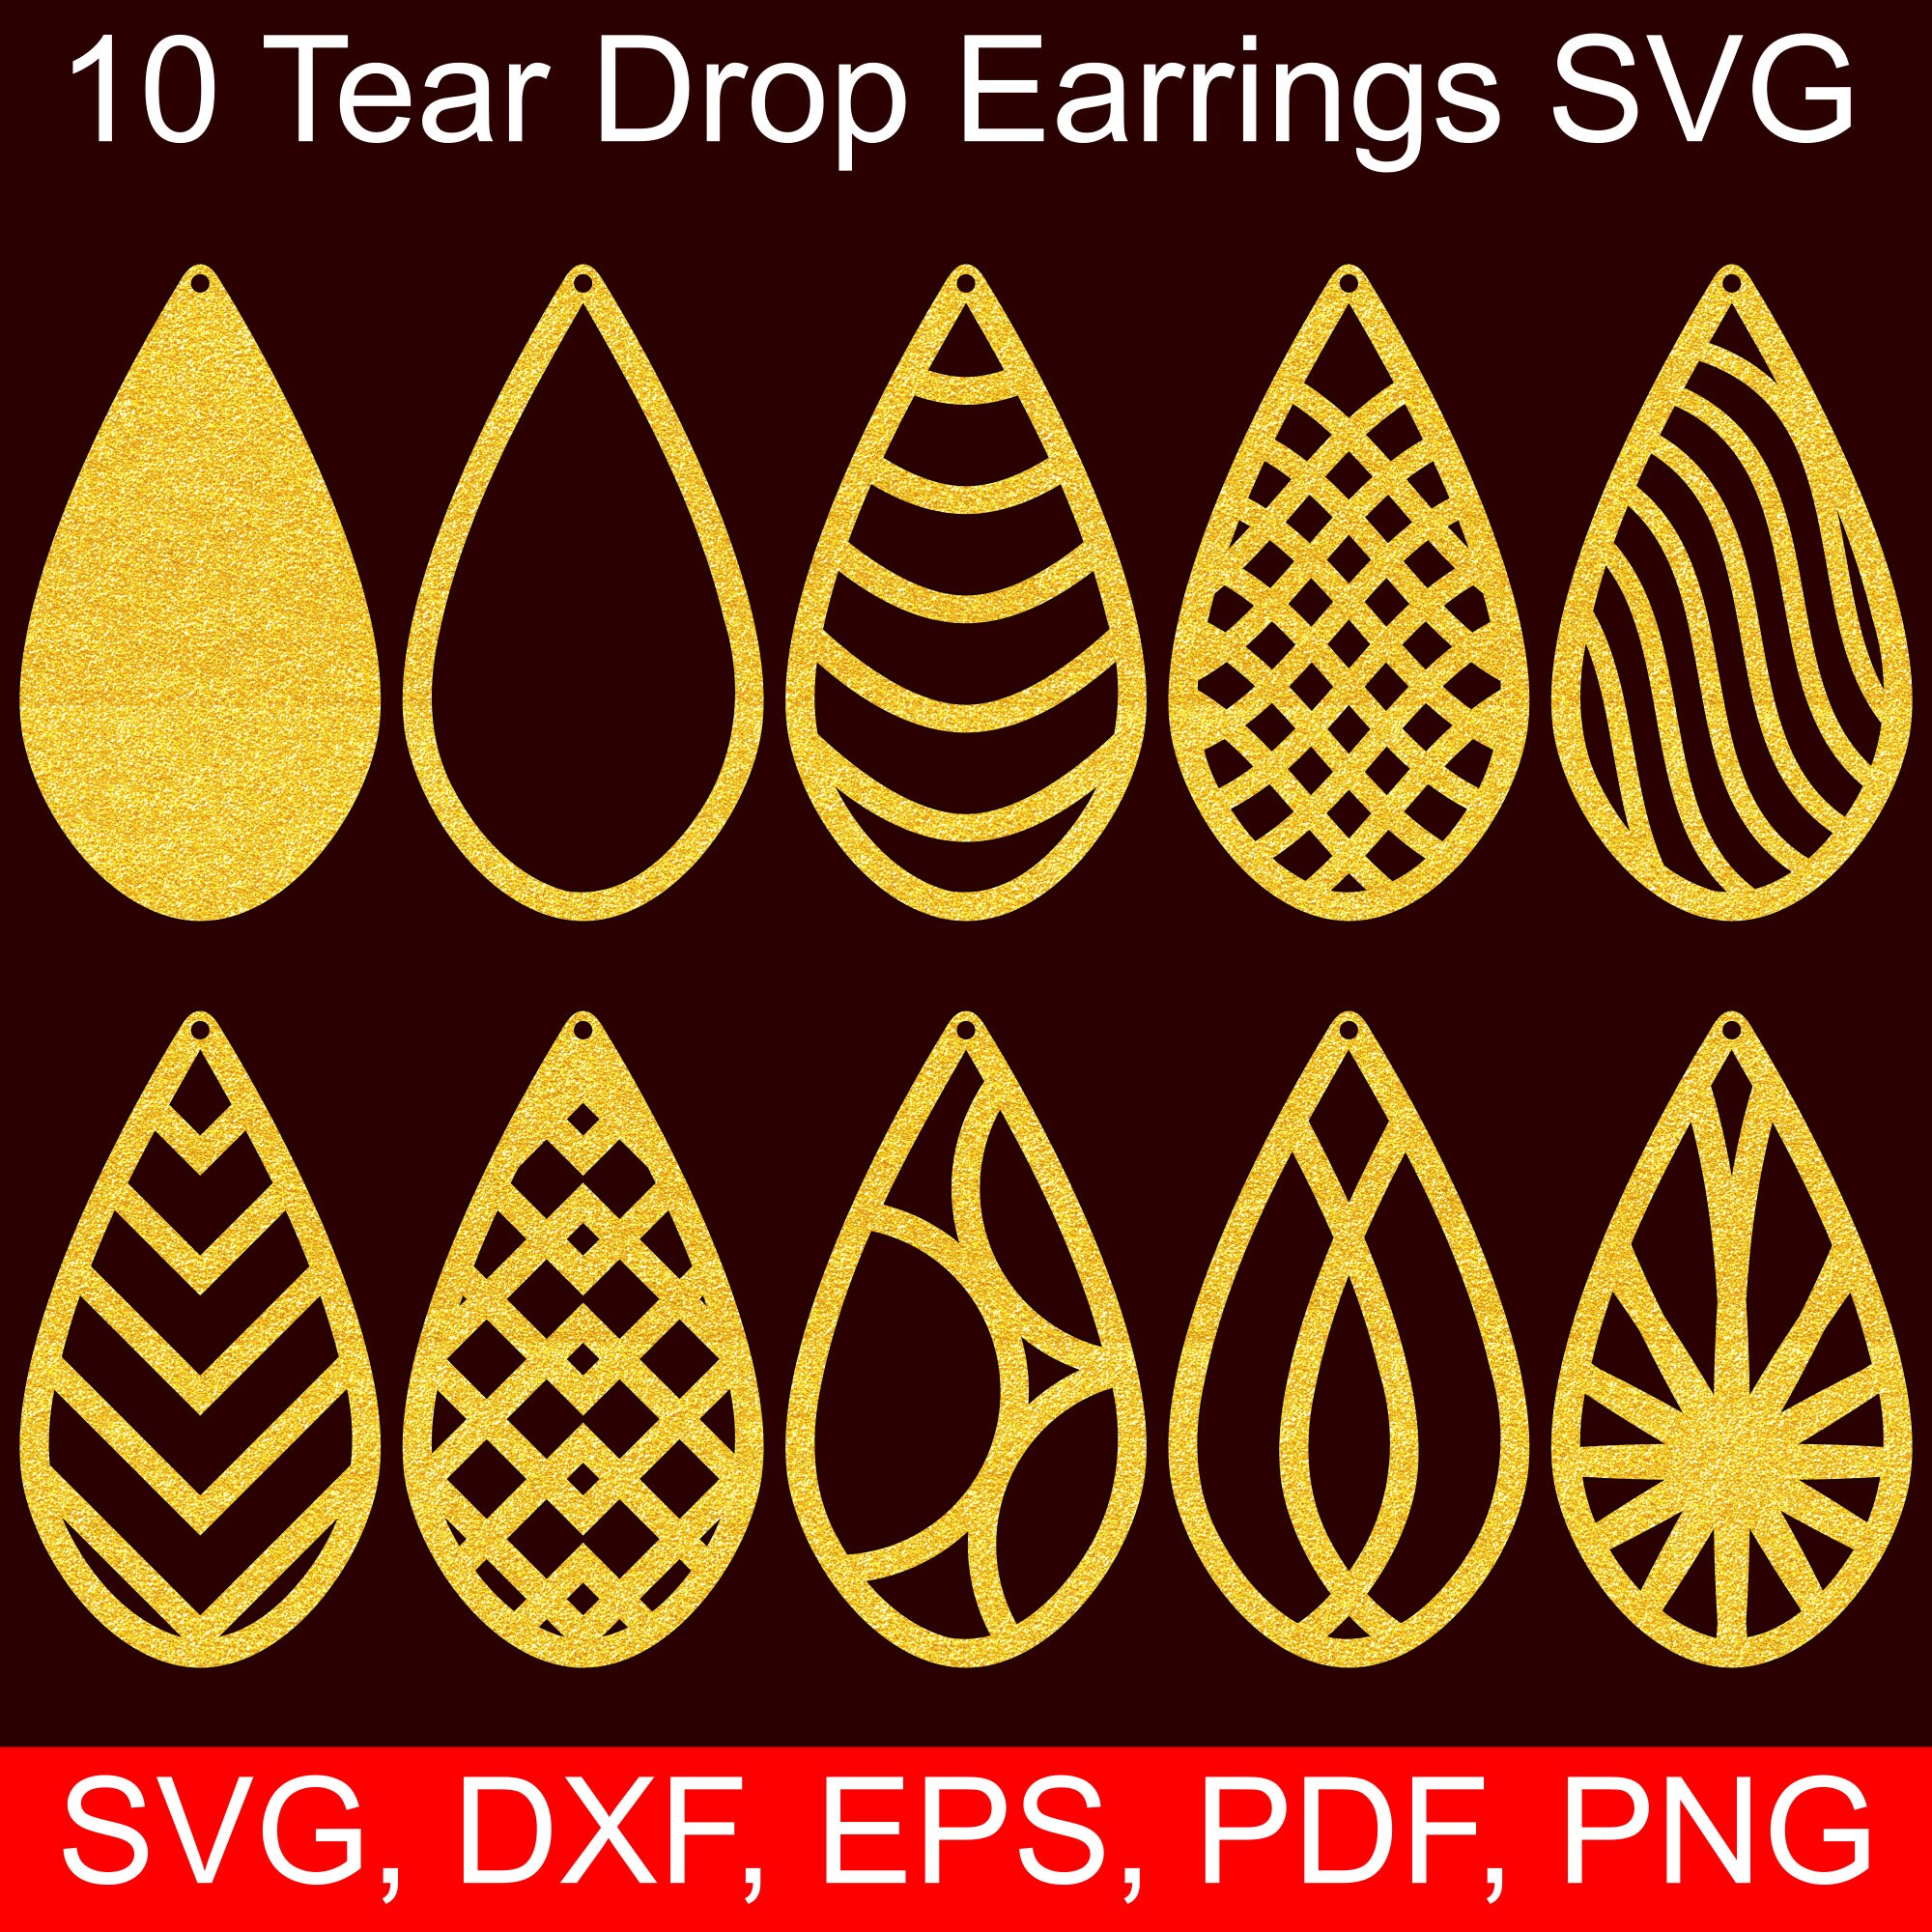 10 Tear Drop Earrings SVG Files, Tear Drop SVG Cut files ...